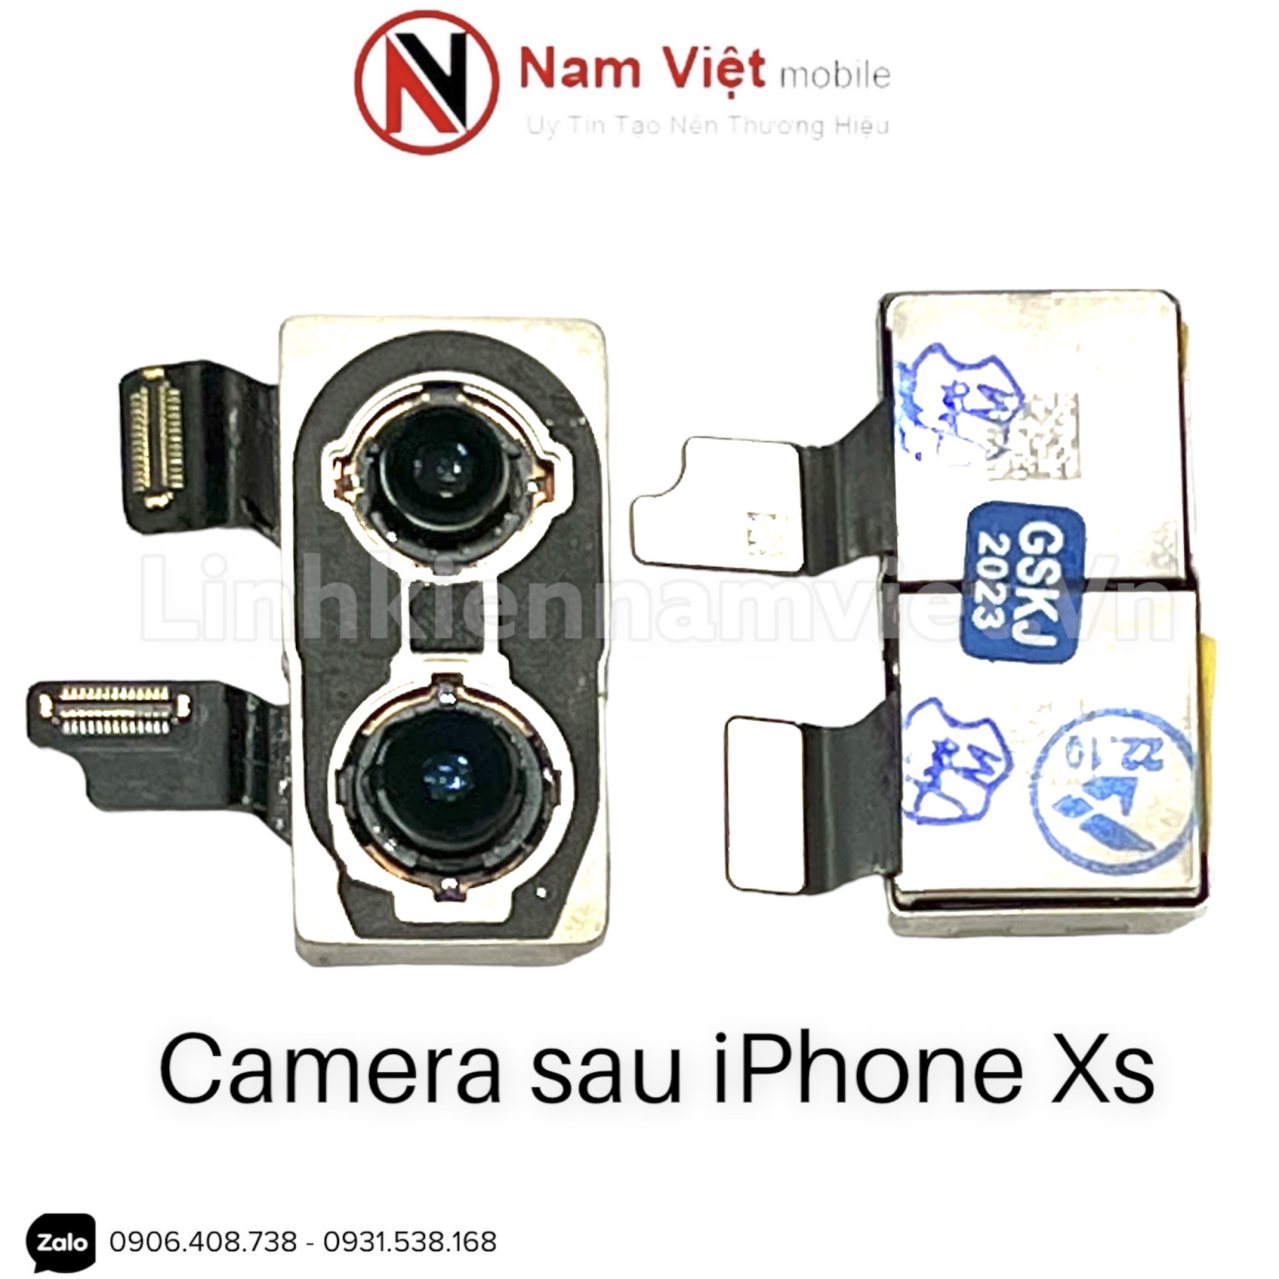 Camera sau iPhone Xs